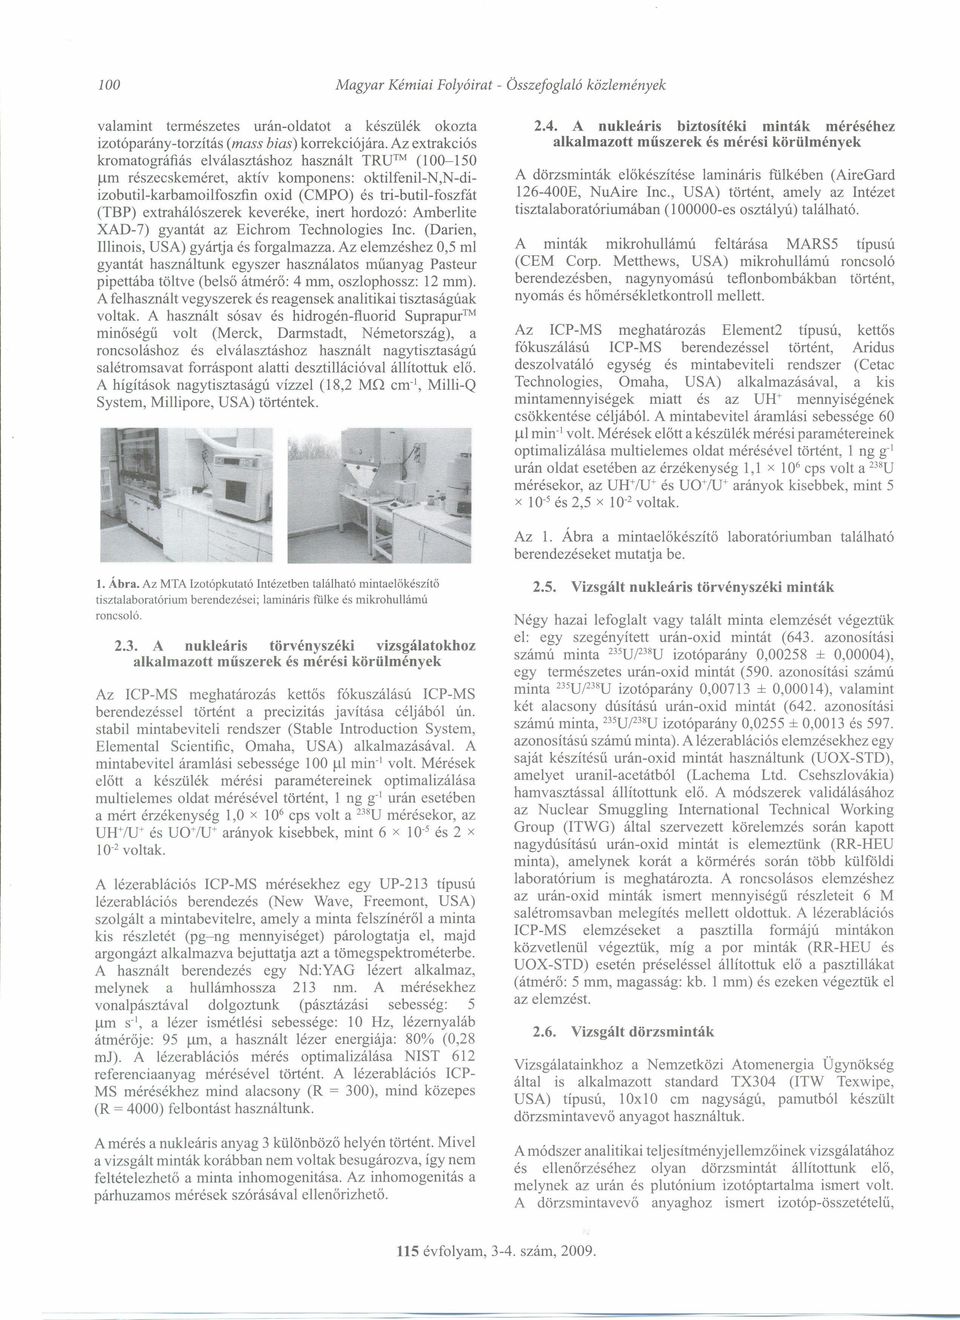 keveréke, inert hordozó: Amberlite XAD-7) gyantát az Eichrom Technologies Inc. (Darien, Illinois, USA) gyártja és forgalmazza.